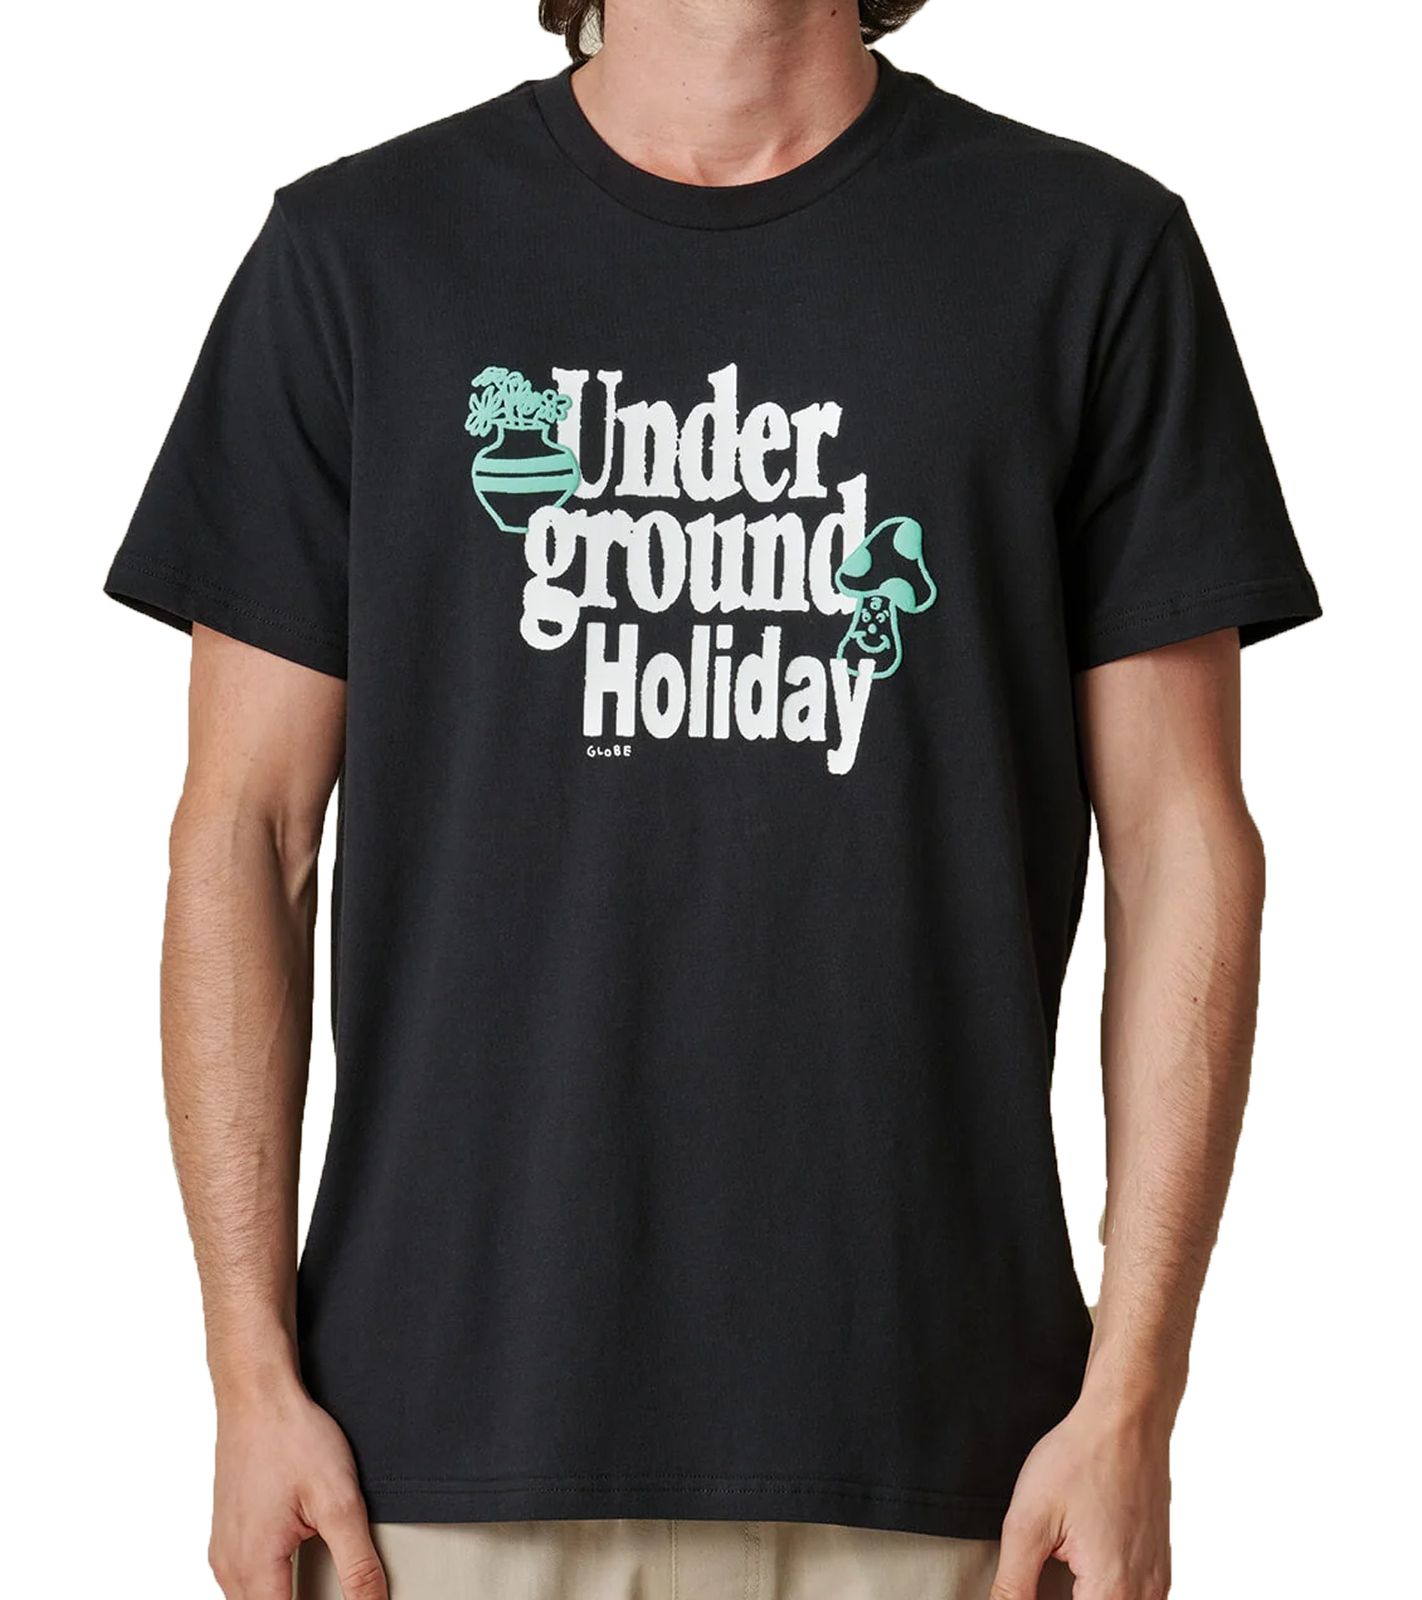 GLOBE Underground Holiday Herren Baumwoll-Shirt nachhaltiges Rundhals-Shirt mit Schriftzug GB02241003 BLK Schwarz von GLOBE